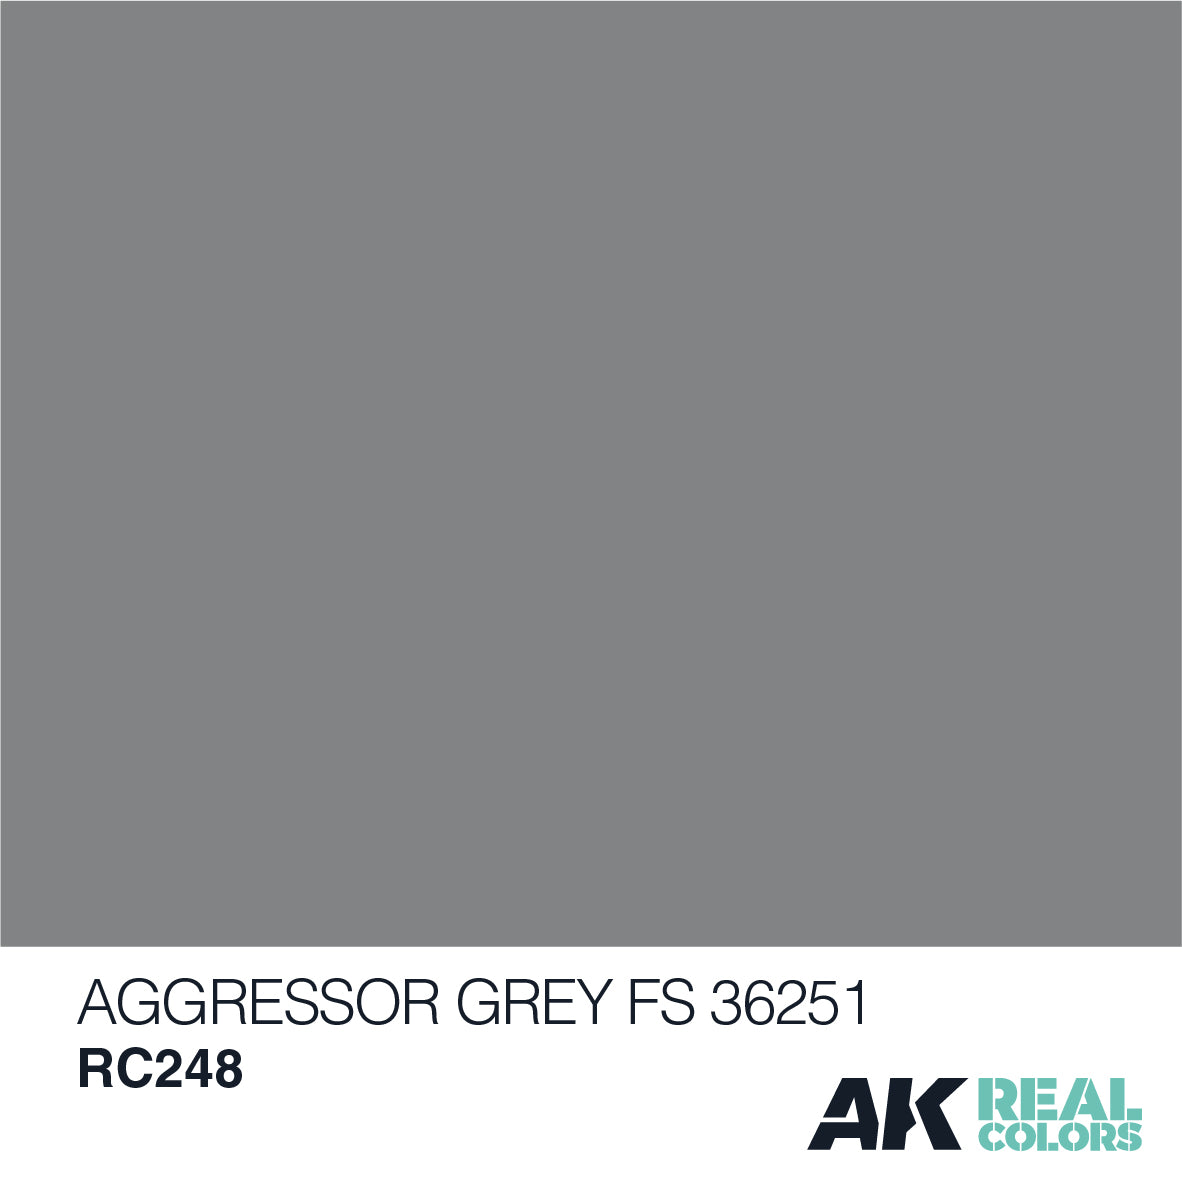 Aggressor Grey FS 36251 10ml - Loaded Dice Barry Vale of Glamorgan CF64 3HD